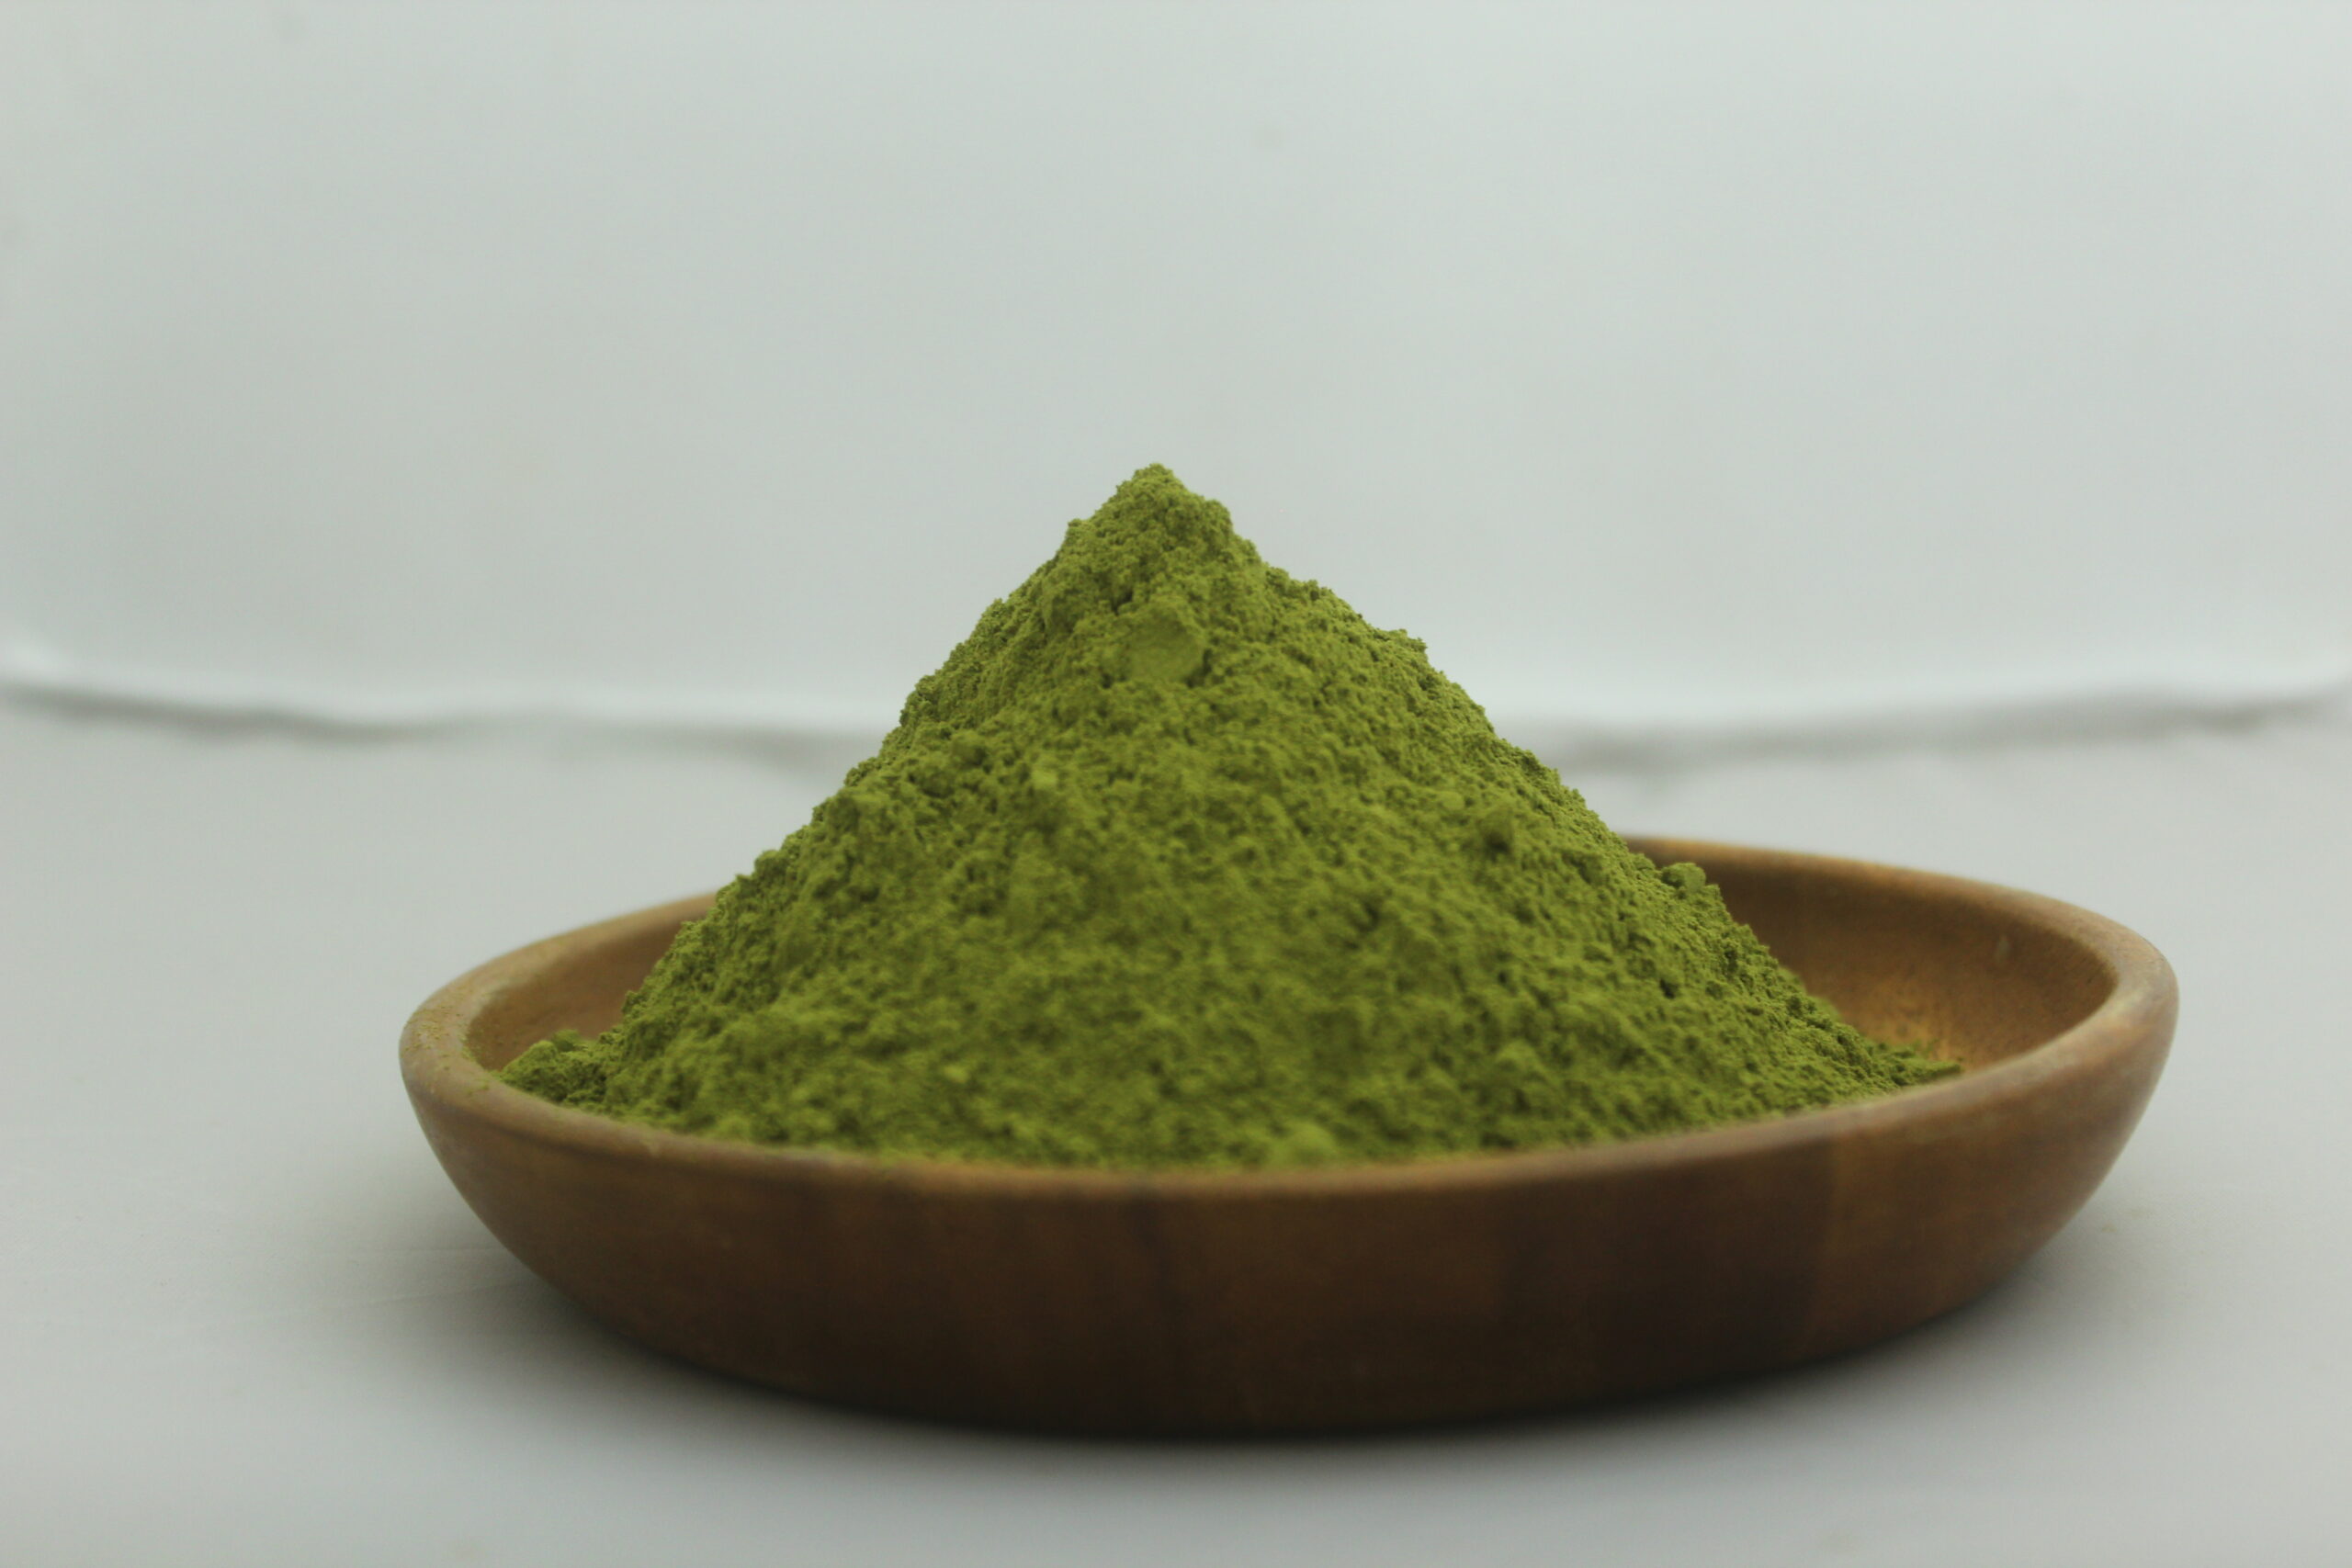 Buy Moringa leaf powder at low prices